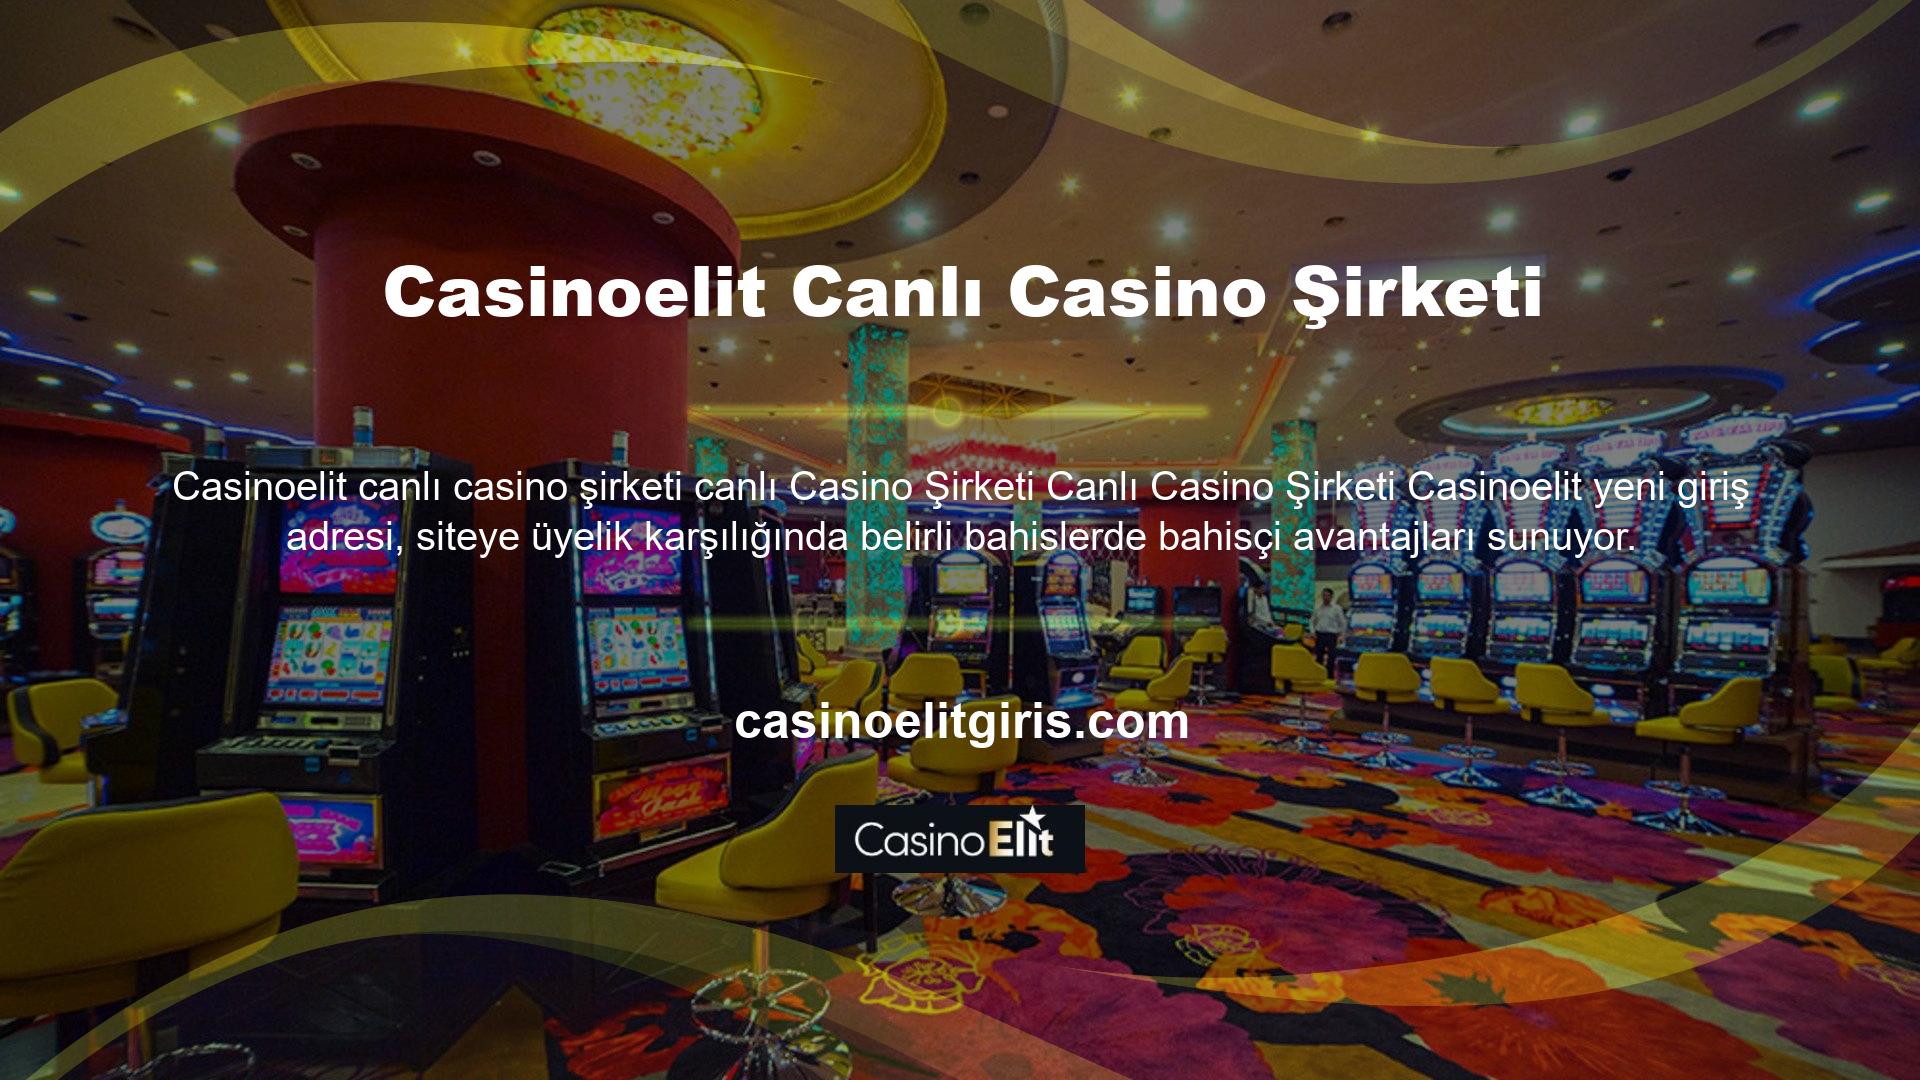 Casinoelit bahis sitesi, bahis sitesinin lisansı ve sunduğu hizmetler kullanılarak ödeme yapılıp yapılmadığı gibi sorulara gerekli cevapları vermiştir